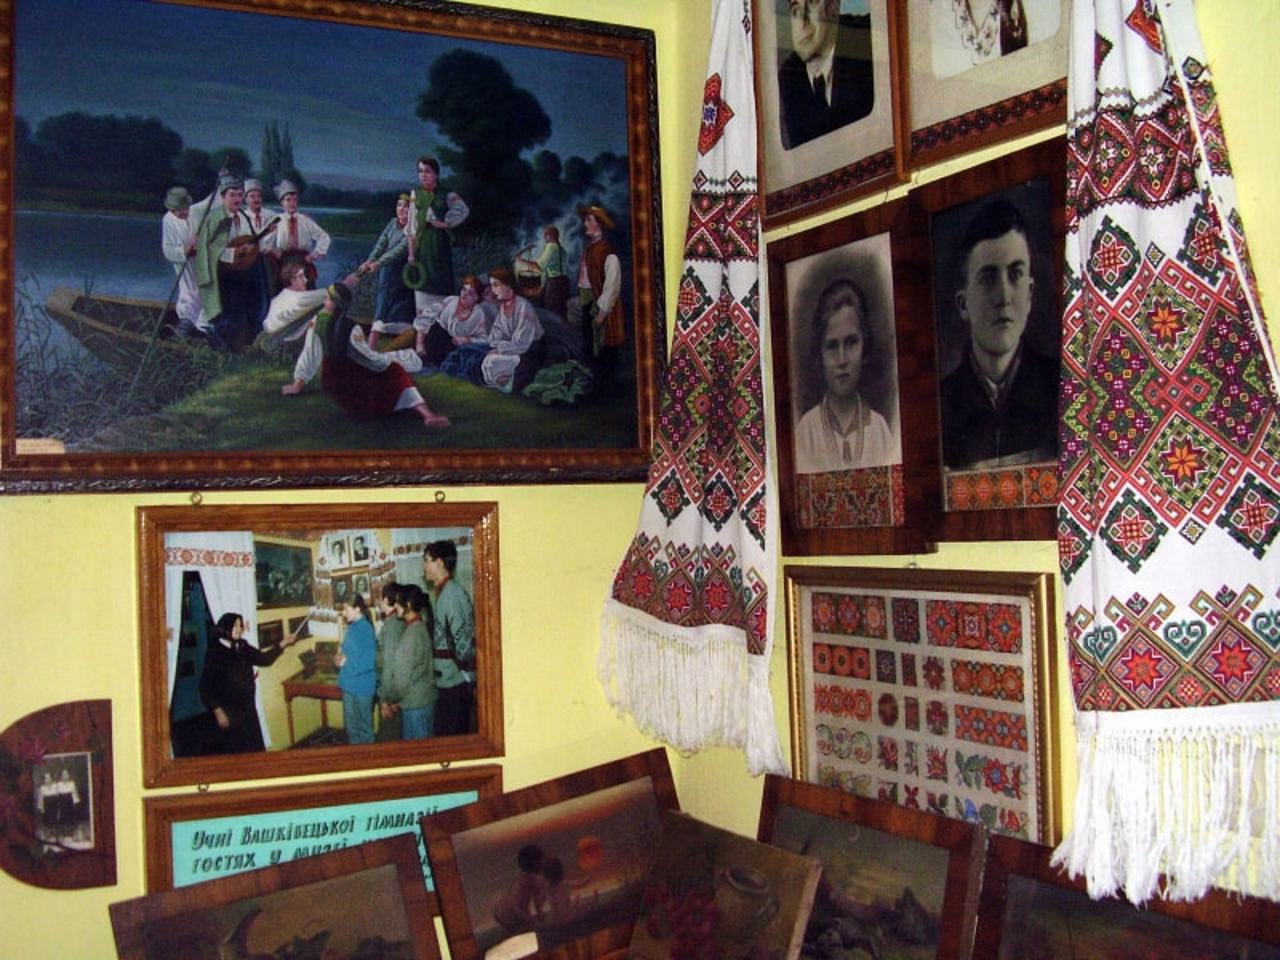 Heorhiy Haras Manor Museum, Vashkivtsi